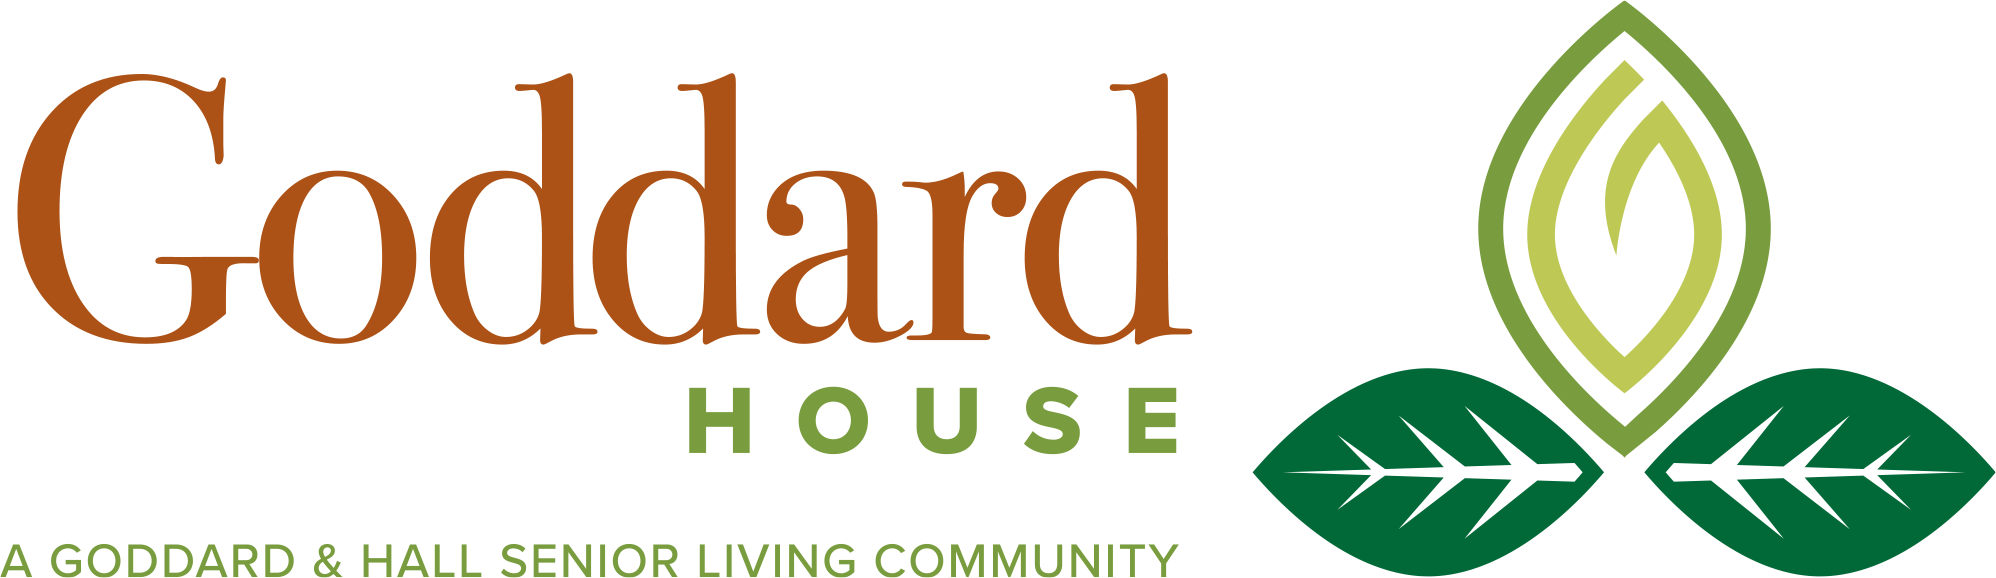 Goddard_House_logo_horiz_RGB